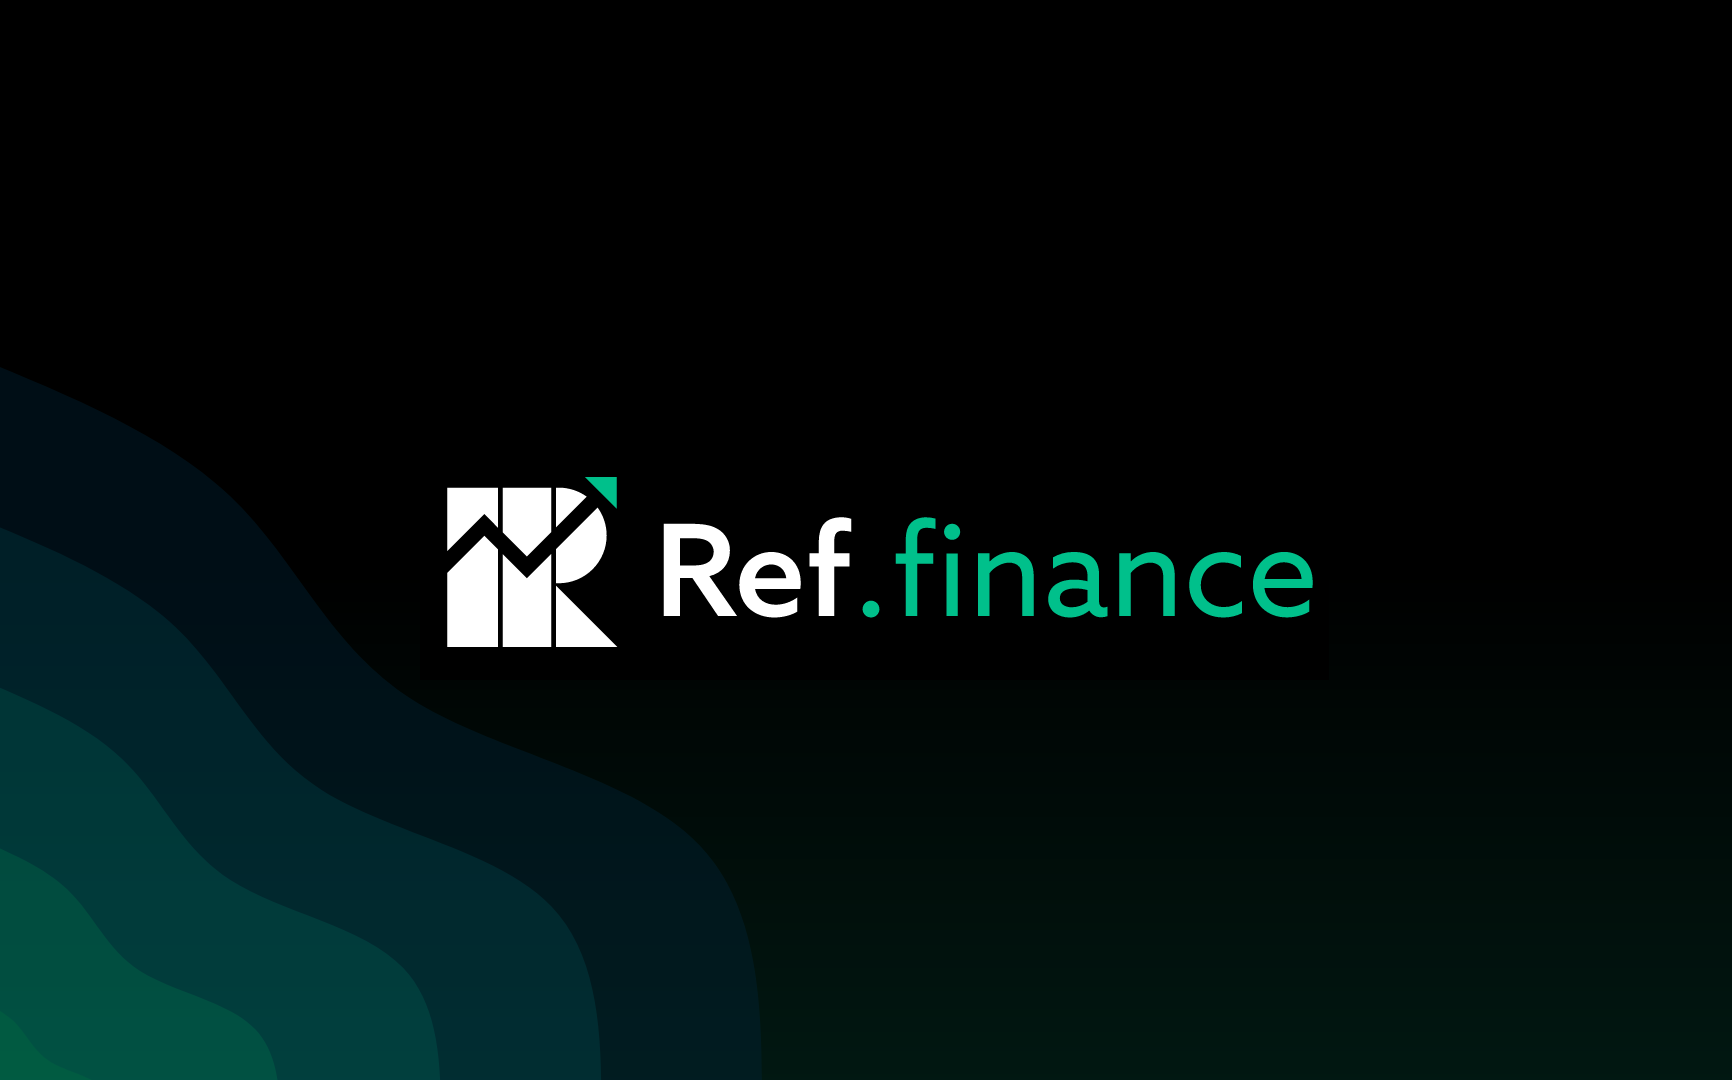 Ref Finance là một coin tiềm năng trong hệ sinh thái Near